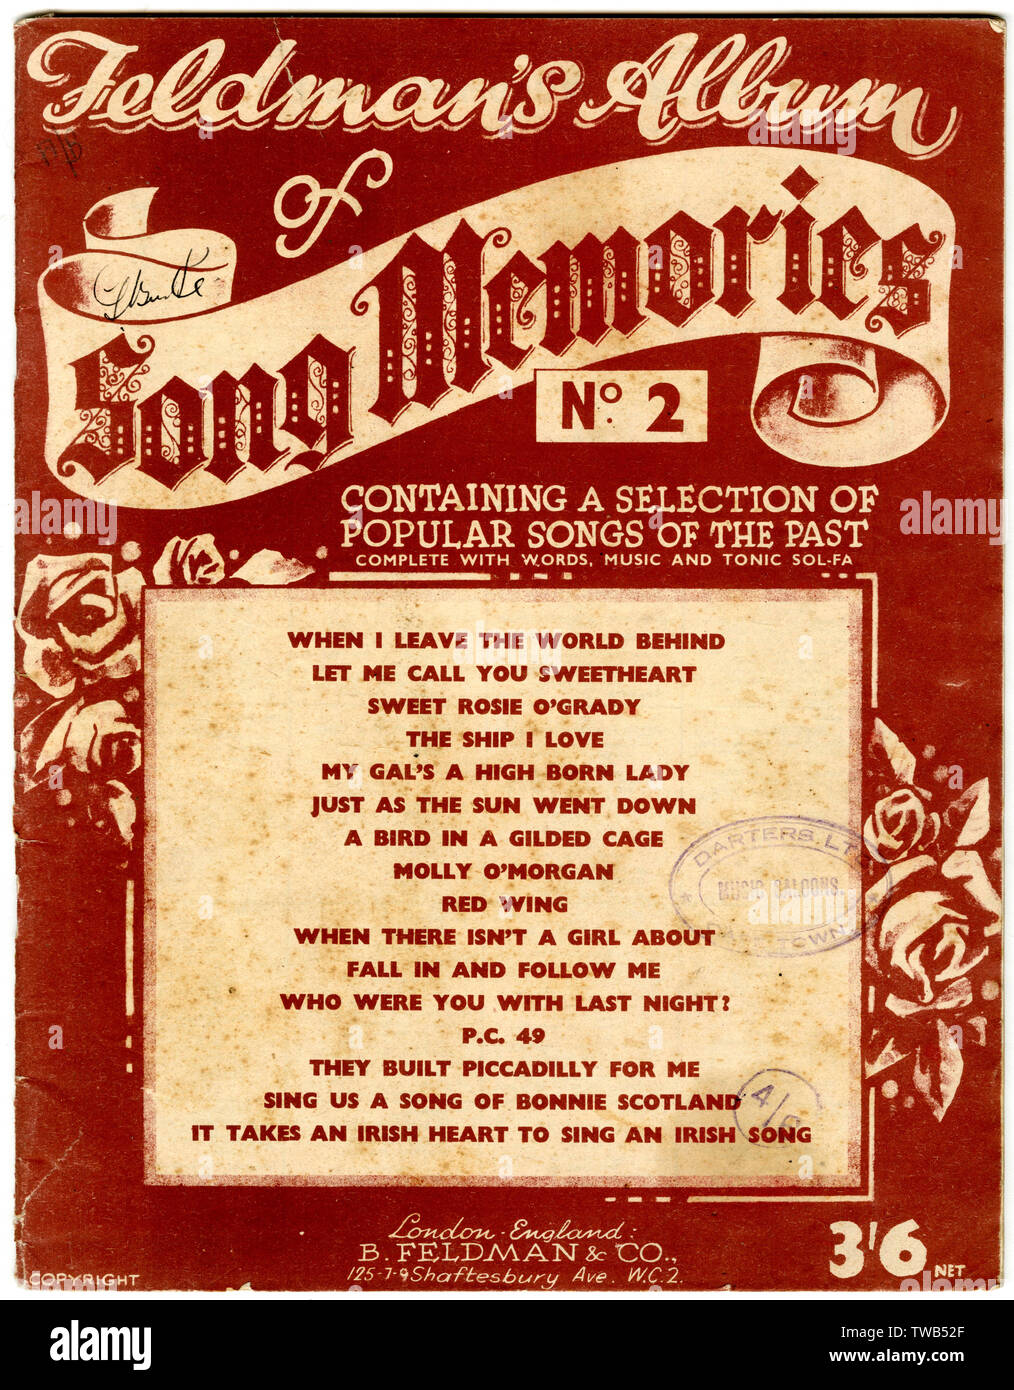 El diseño de la cubierta, Feldman el álbum de recuerdos de la canción nº2, que contiene una selección de canciones populares del pasado. 1930 Foto de stock